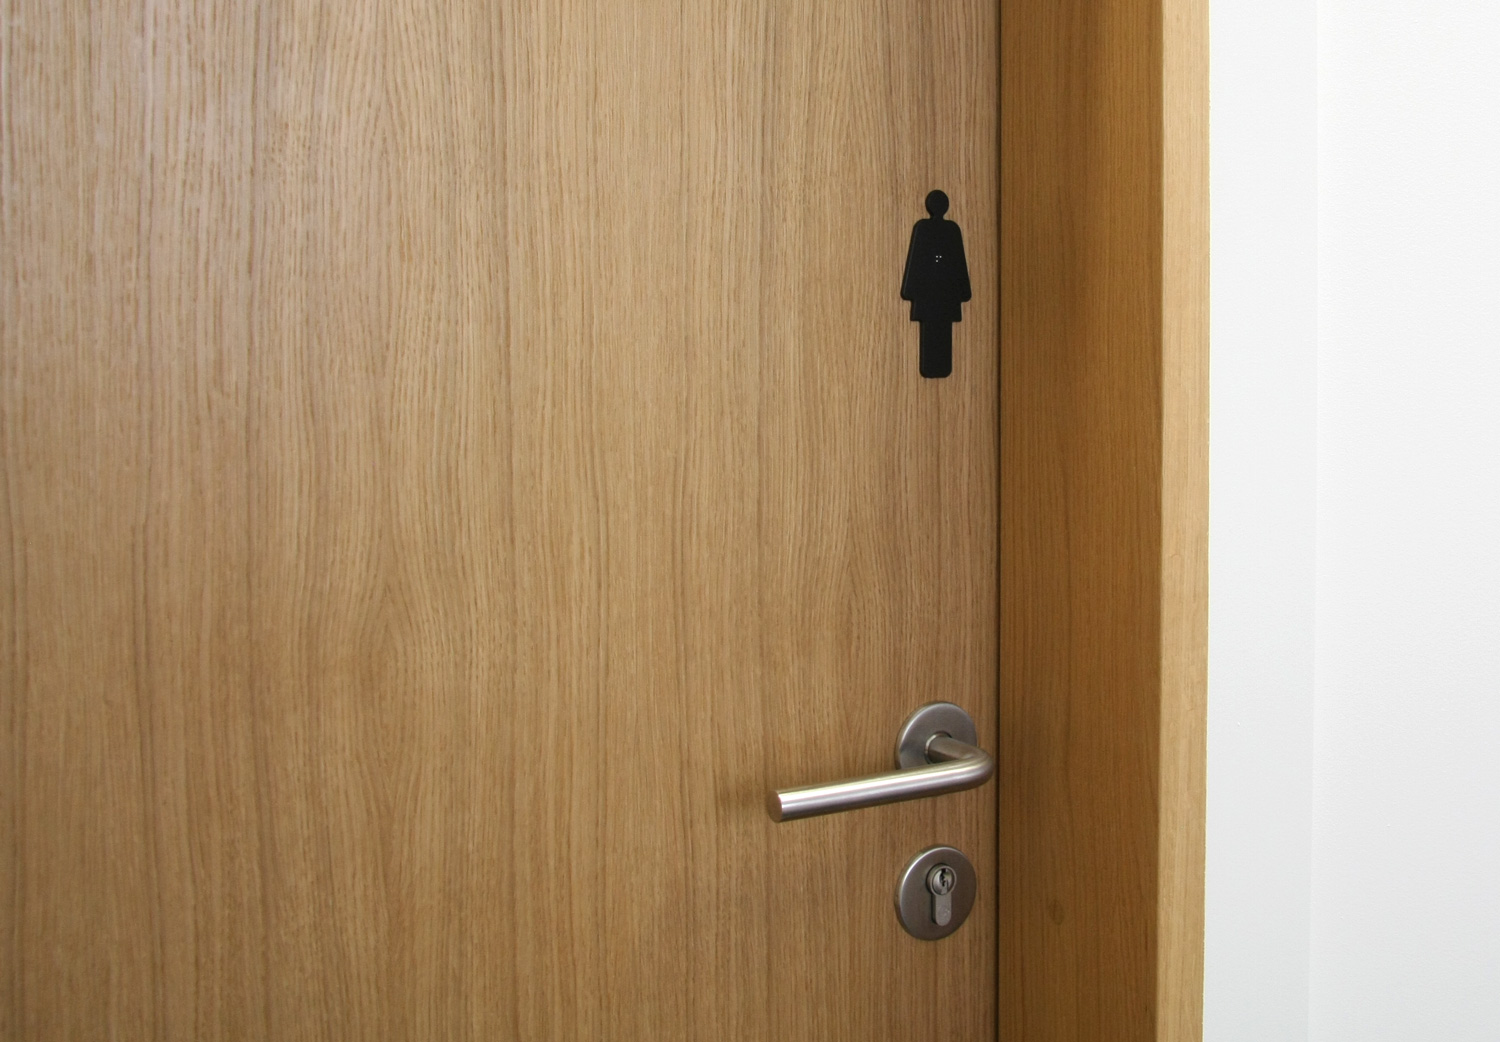 pictograme littera marcal toilette femme sur porte en bois